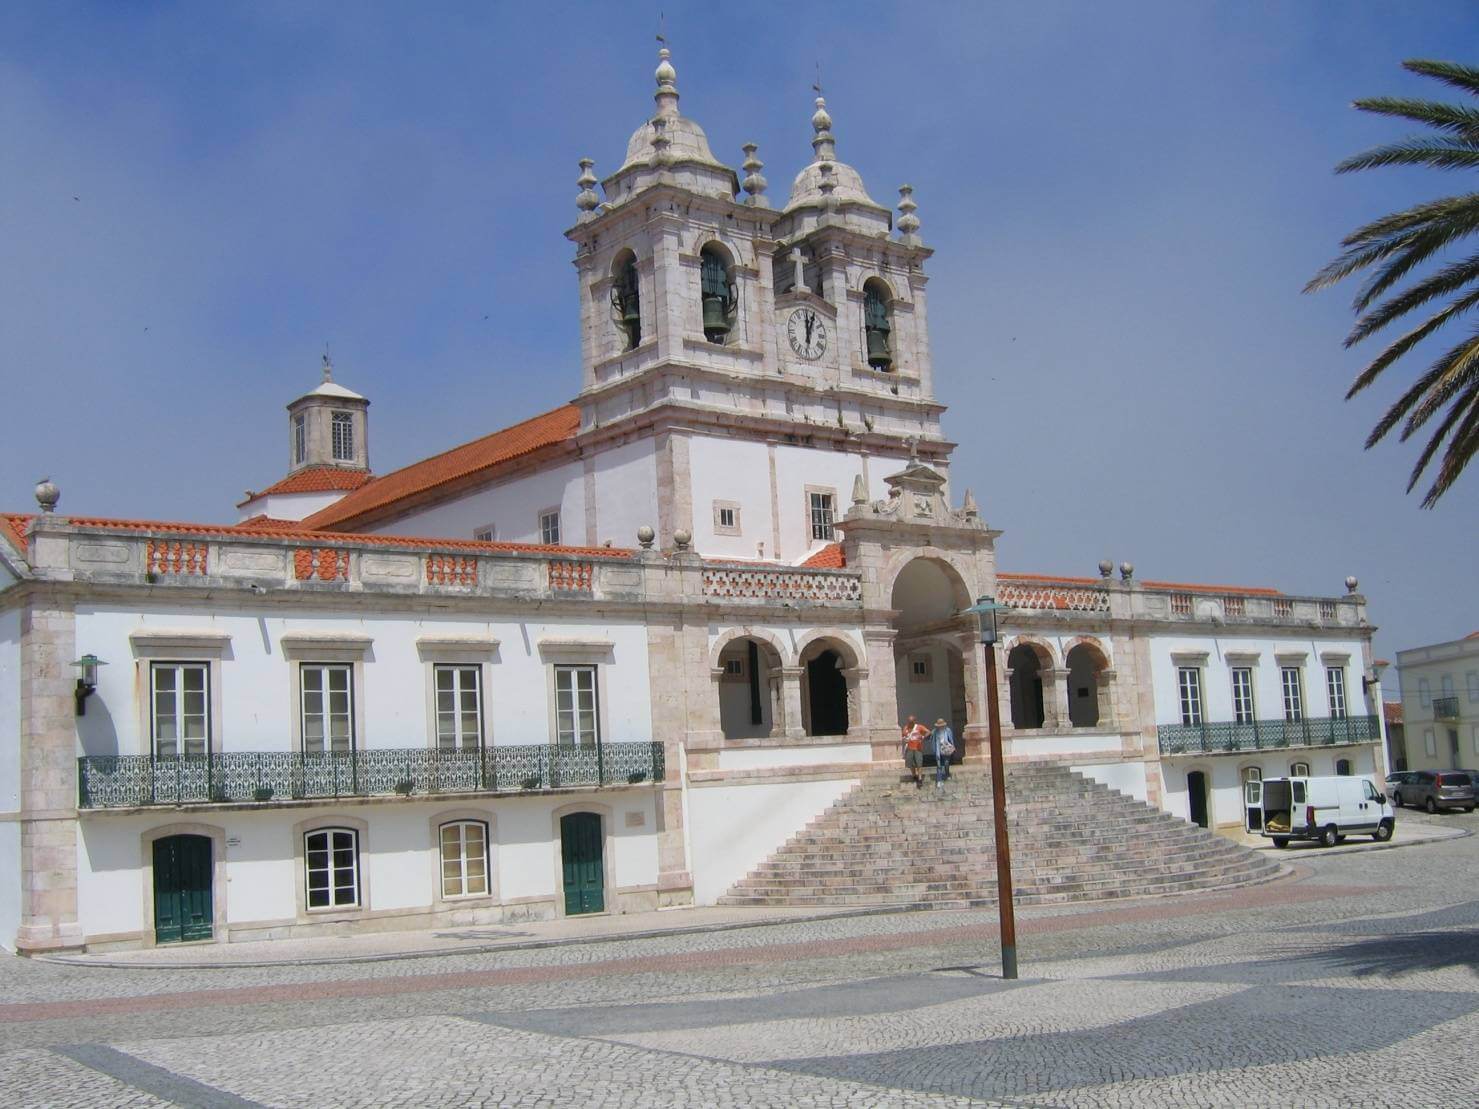 Церковь Nossa Senhora da Назаре (церковь Богоматери Назаре)